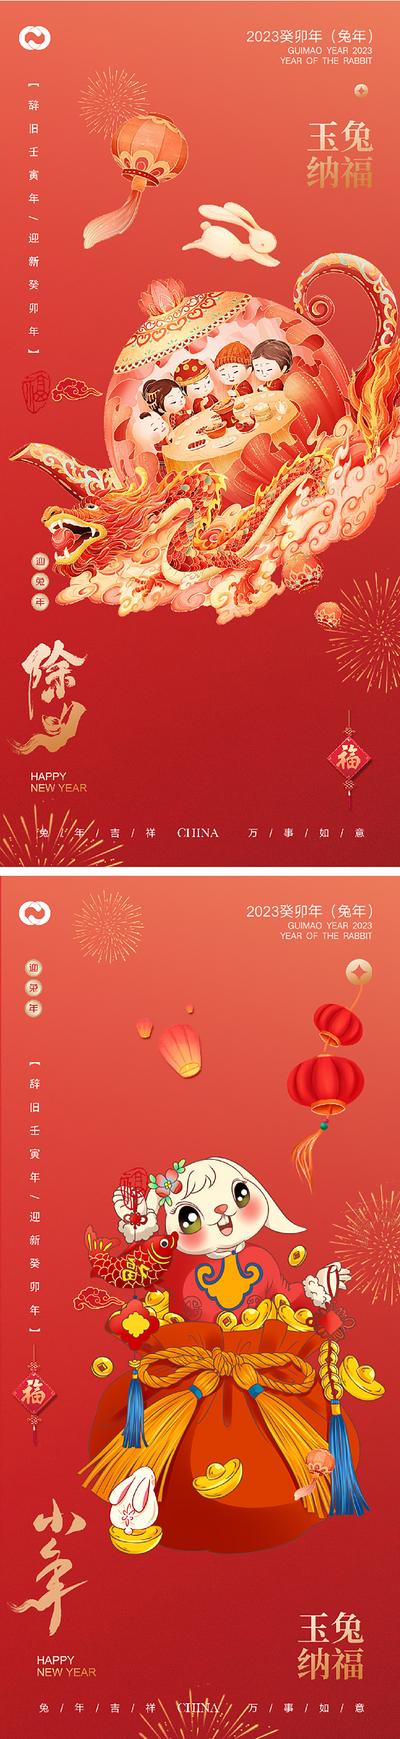 南门网 海报 中国传统节日 小年 除夕 红色 国潮 灯笼 兔子 系列